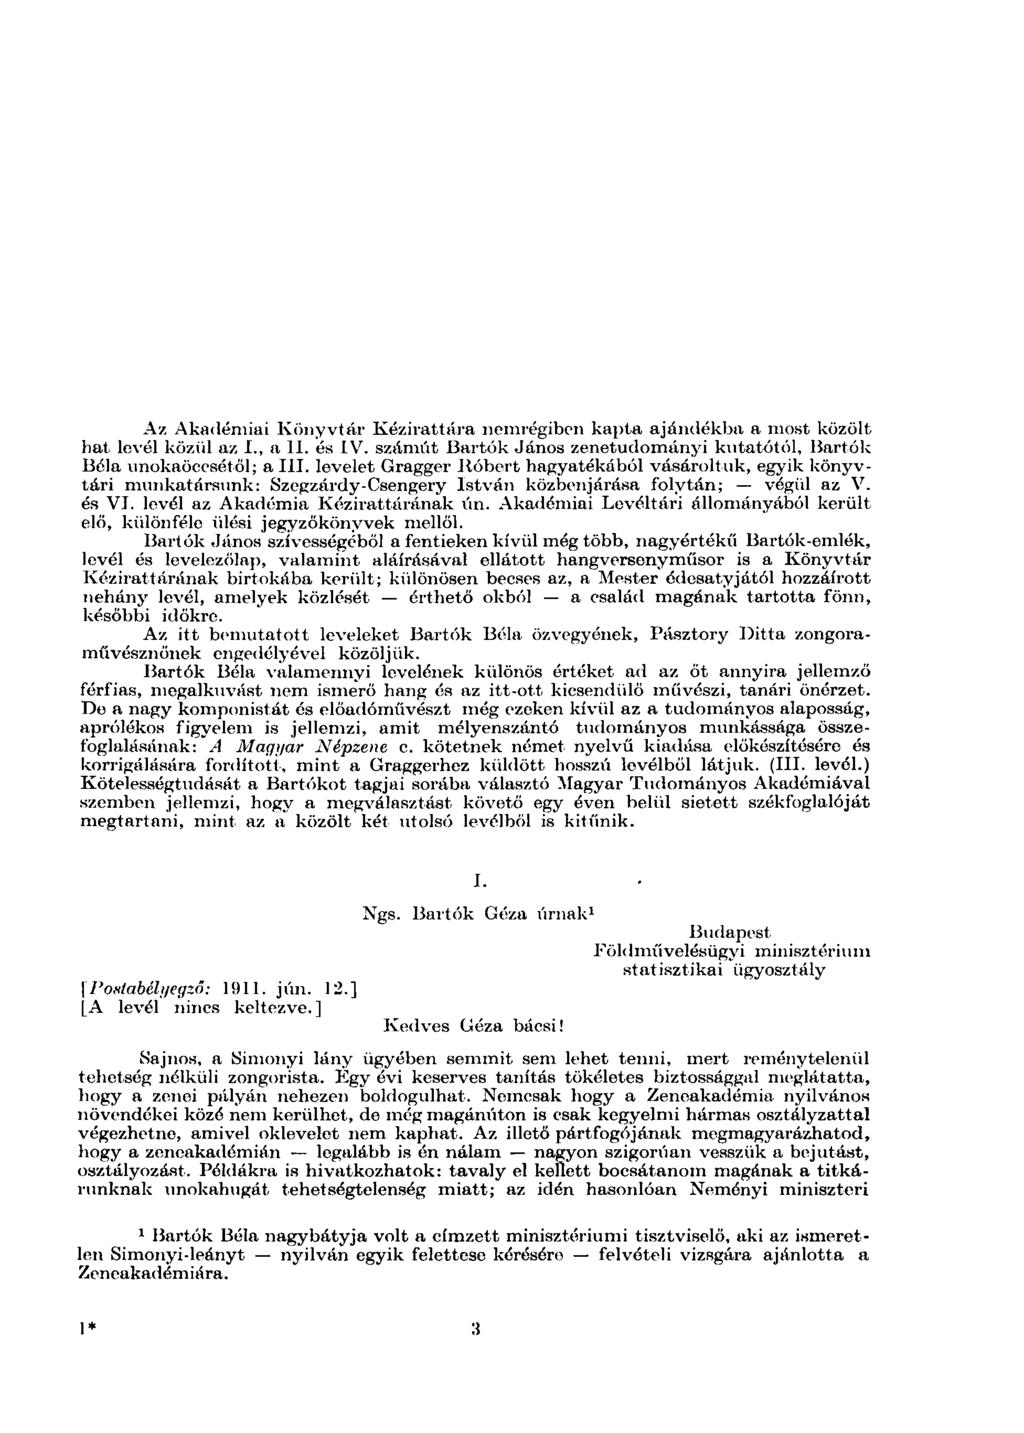 Az Akadémiai Könyvtár Kézirattára nemrégiben kapta ajándékba a most közölt hat levél közül az I., a II. ós IV. számút Bartók János zenetudományi kutatótól, Bartók Bóla unokaöccsétől; a III.